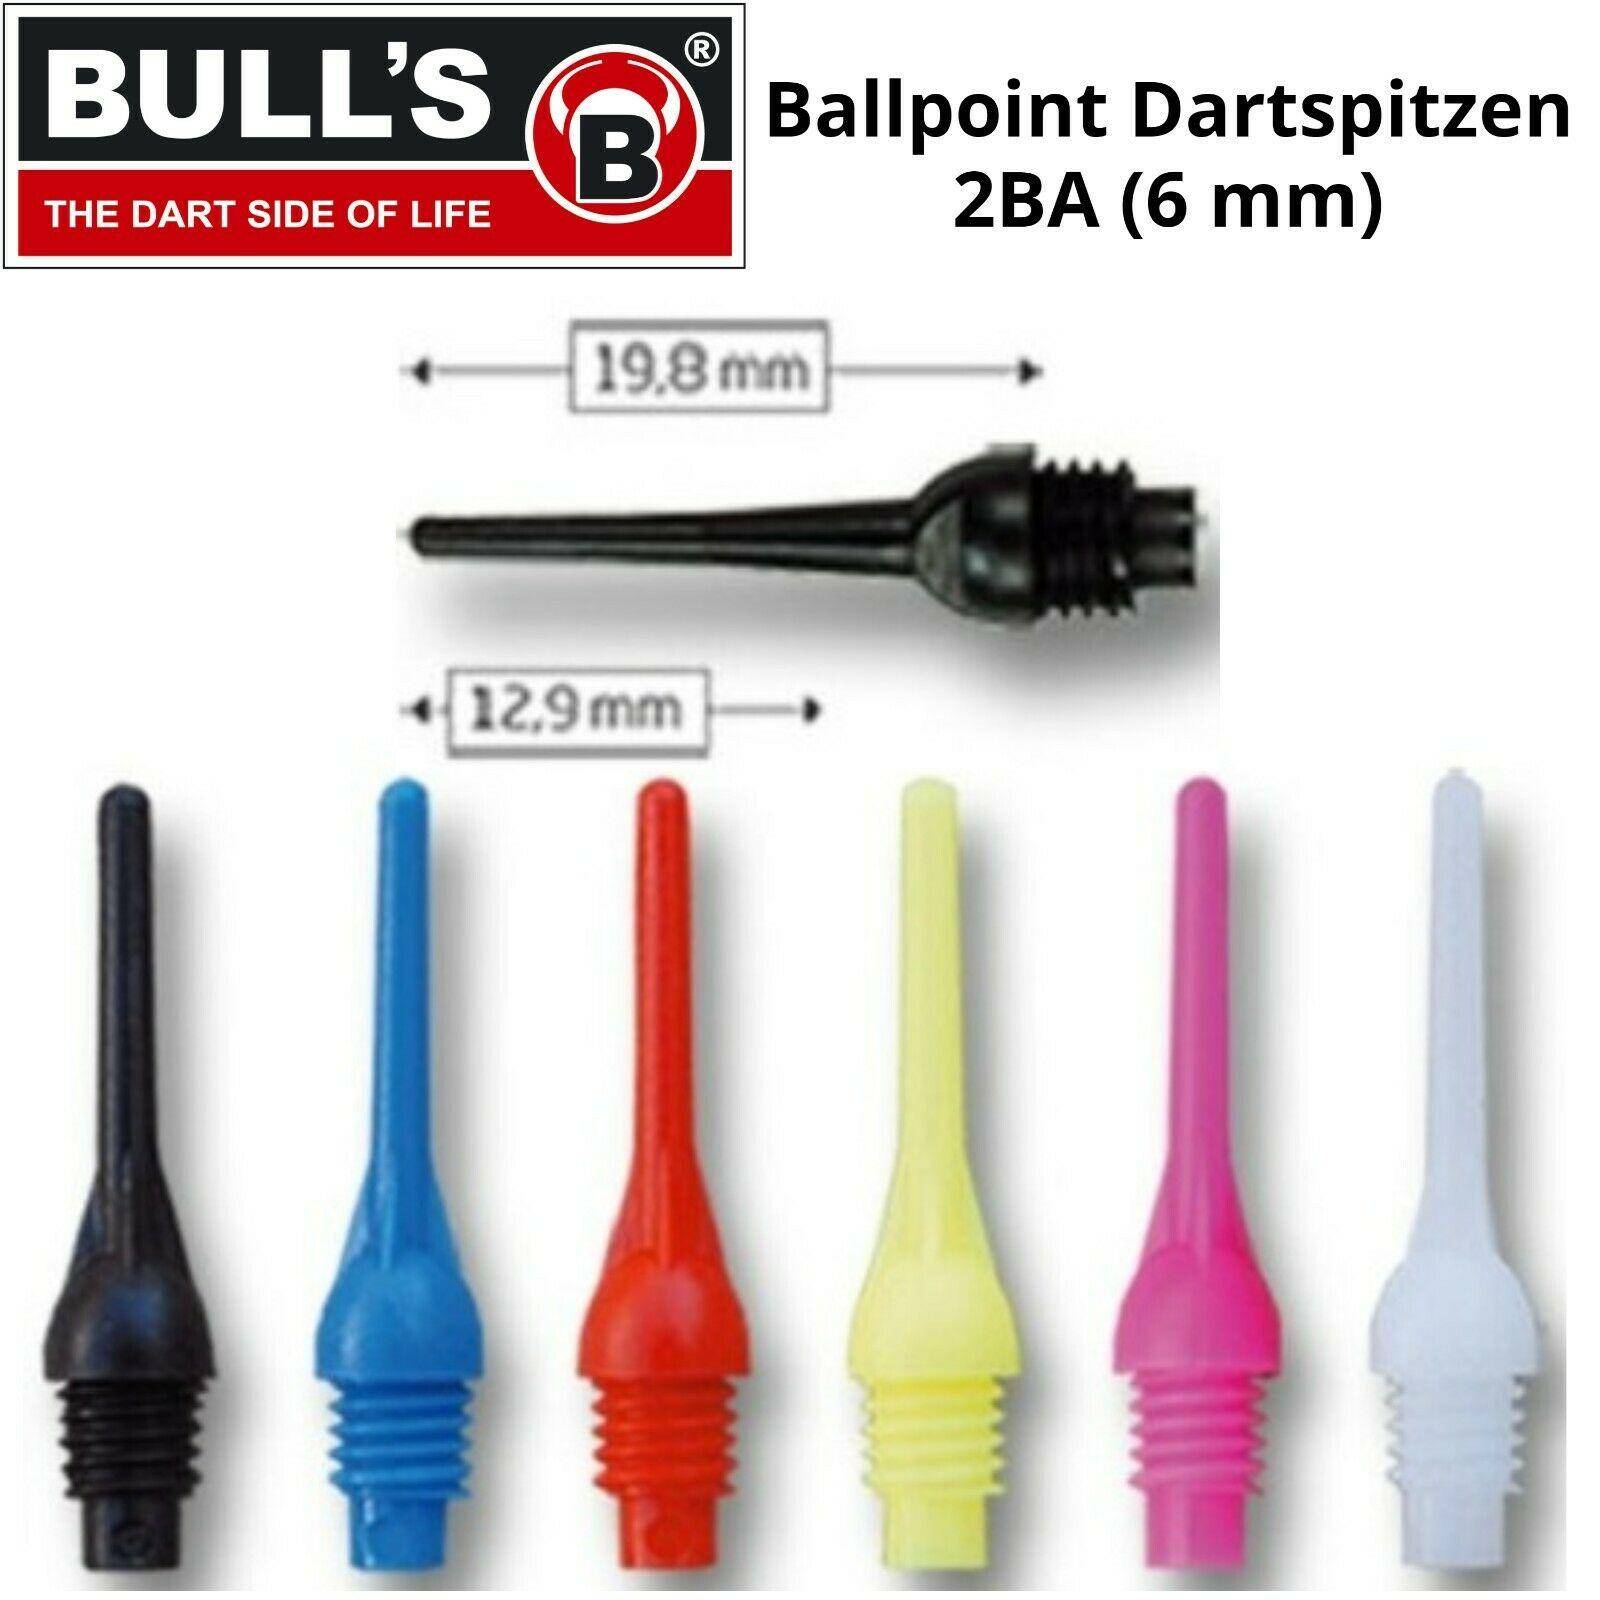 Bulls BALLPOINT Dart Tips 2BA Soft Tip Points - 100 pieces